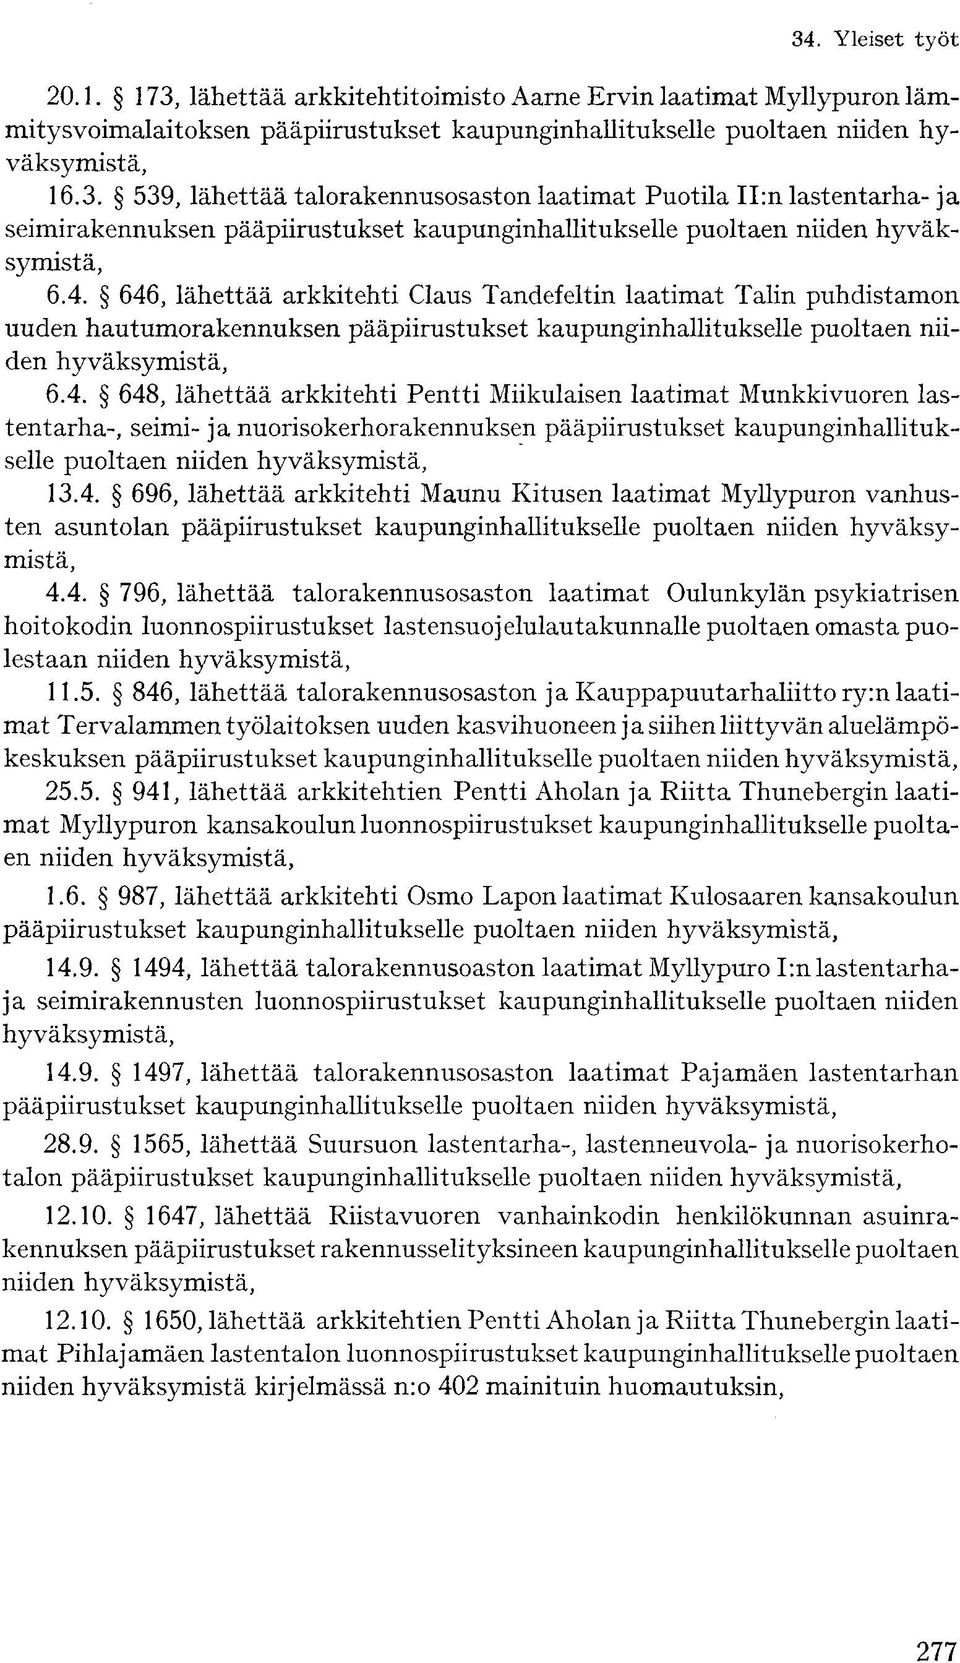 4. 696, lähettää arkkitehti Maunu Kitusen laatimat Myllypuron vanhusten asuntolan pääpiirustukset kaupunginhallitukselle puoltaen niiden hyväksymistä, 4.4. 796, lähettää talorakennusosaston laatimat Oulunkylän psykiatrisen hoitokodin luonnospiirustukset lastensuojelulautakunnalle puoltaen omasta puolestaan niiden hyväksymistä, 11.